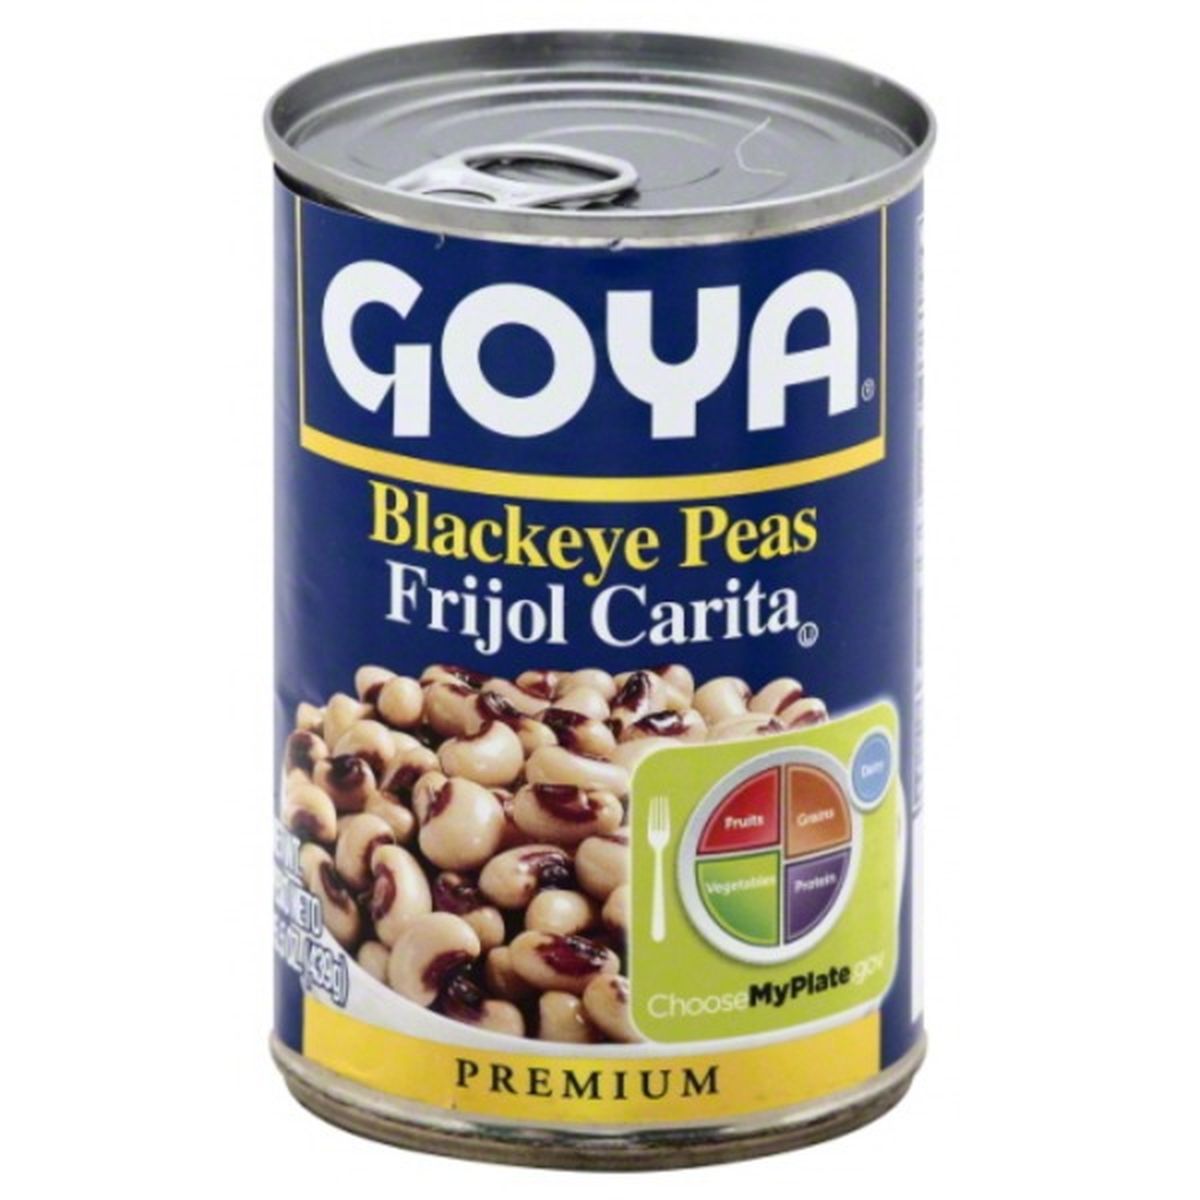 Calories in Goya Blackeye Peas, Premium